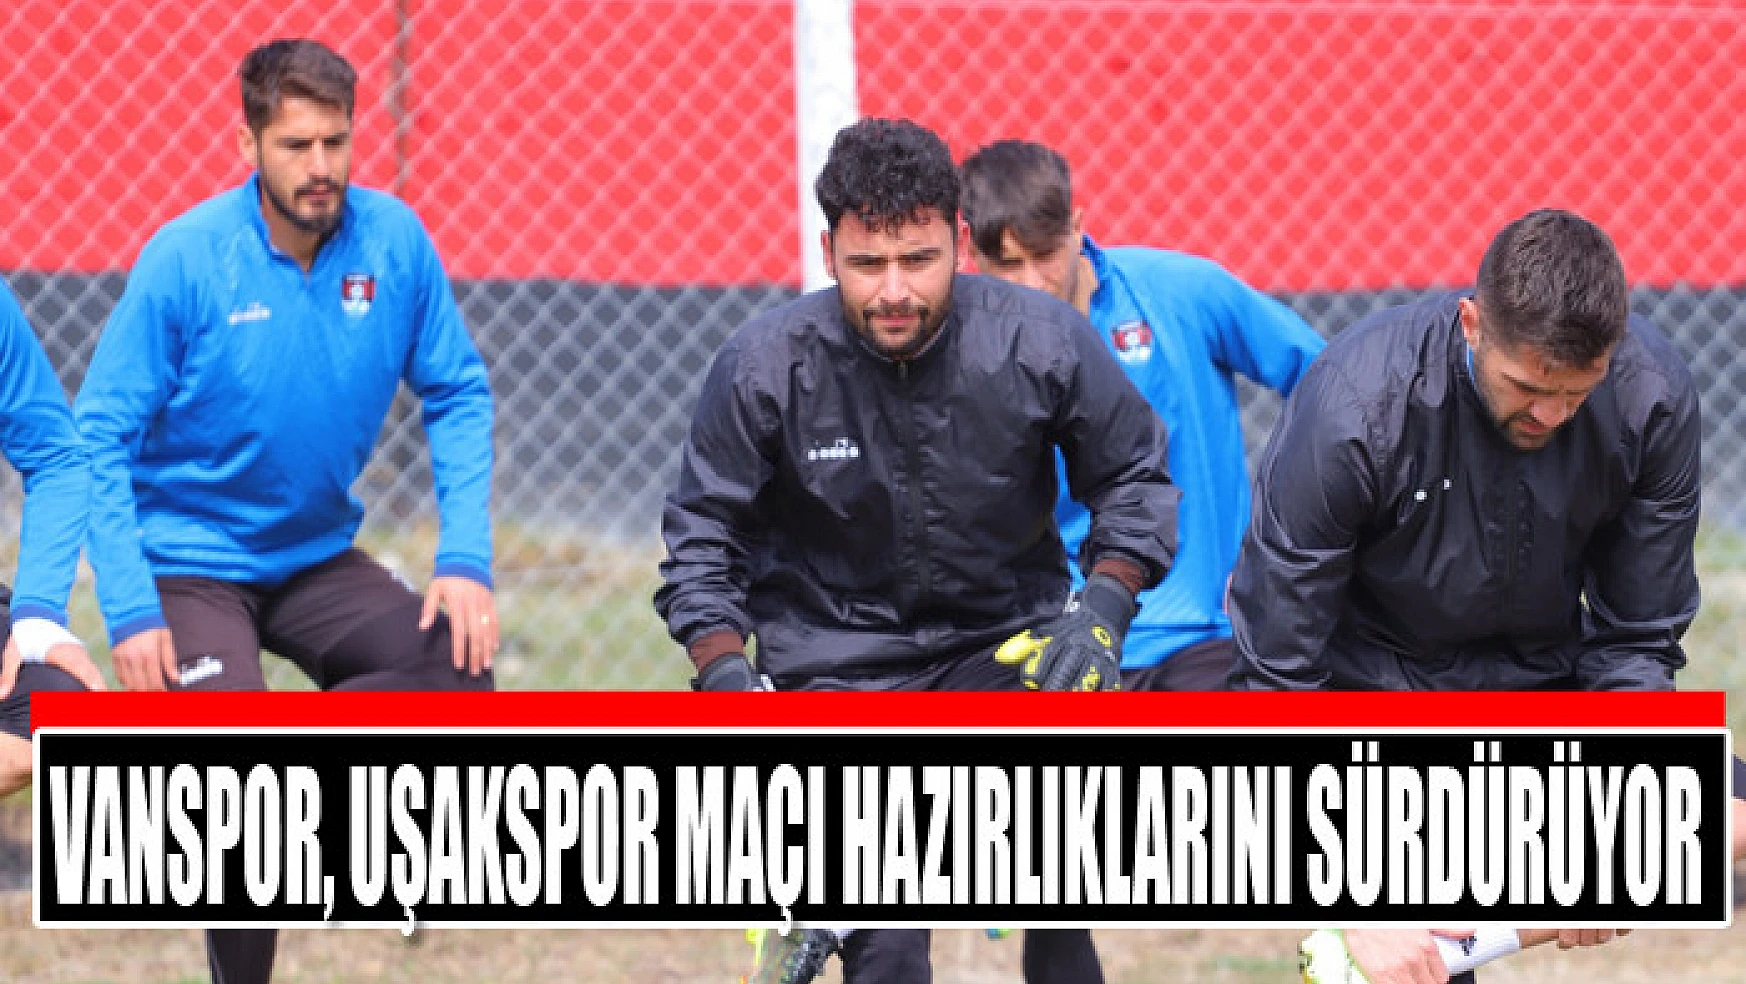 Vanspor, Uşakspor maçı hazırlıklarını sürdürüyor